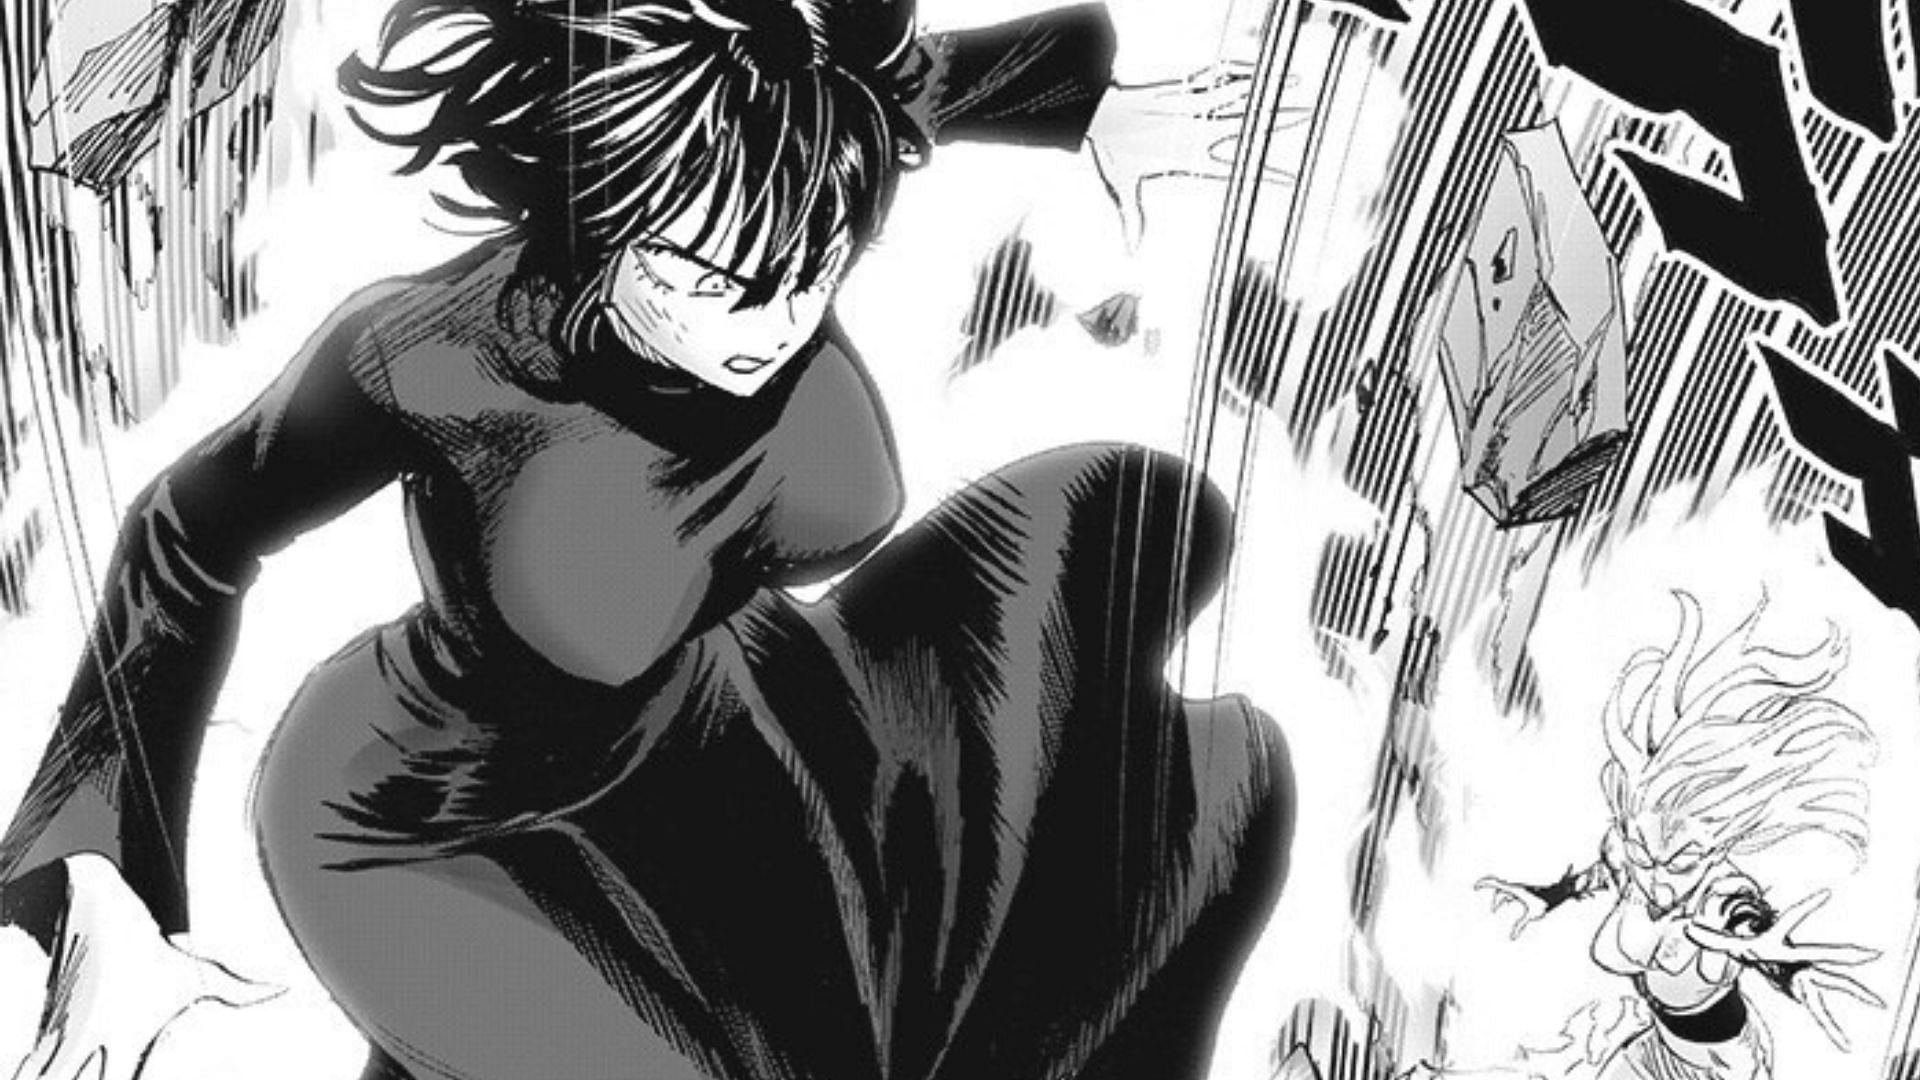 One Punch Man chapter 175 introduces Fubuki like nobody imagined